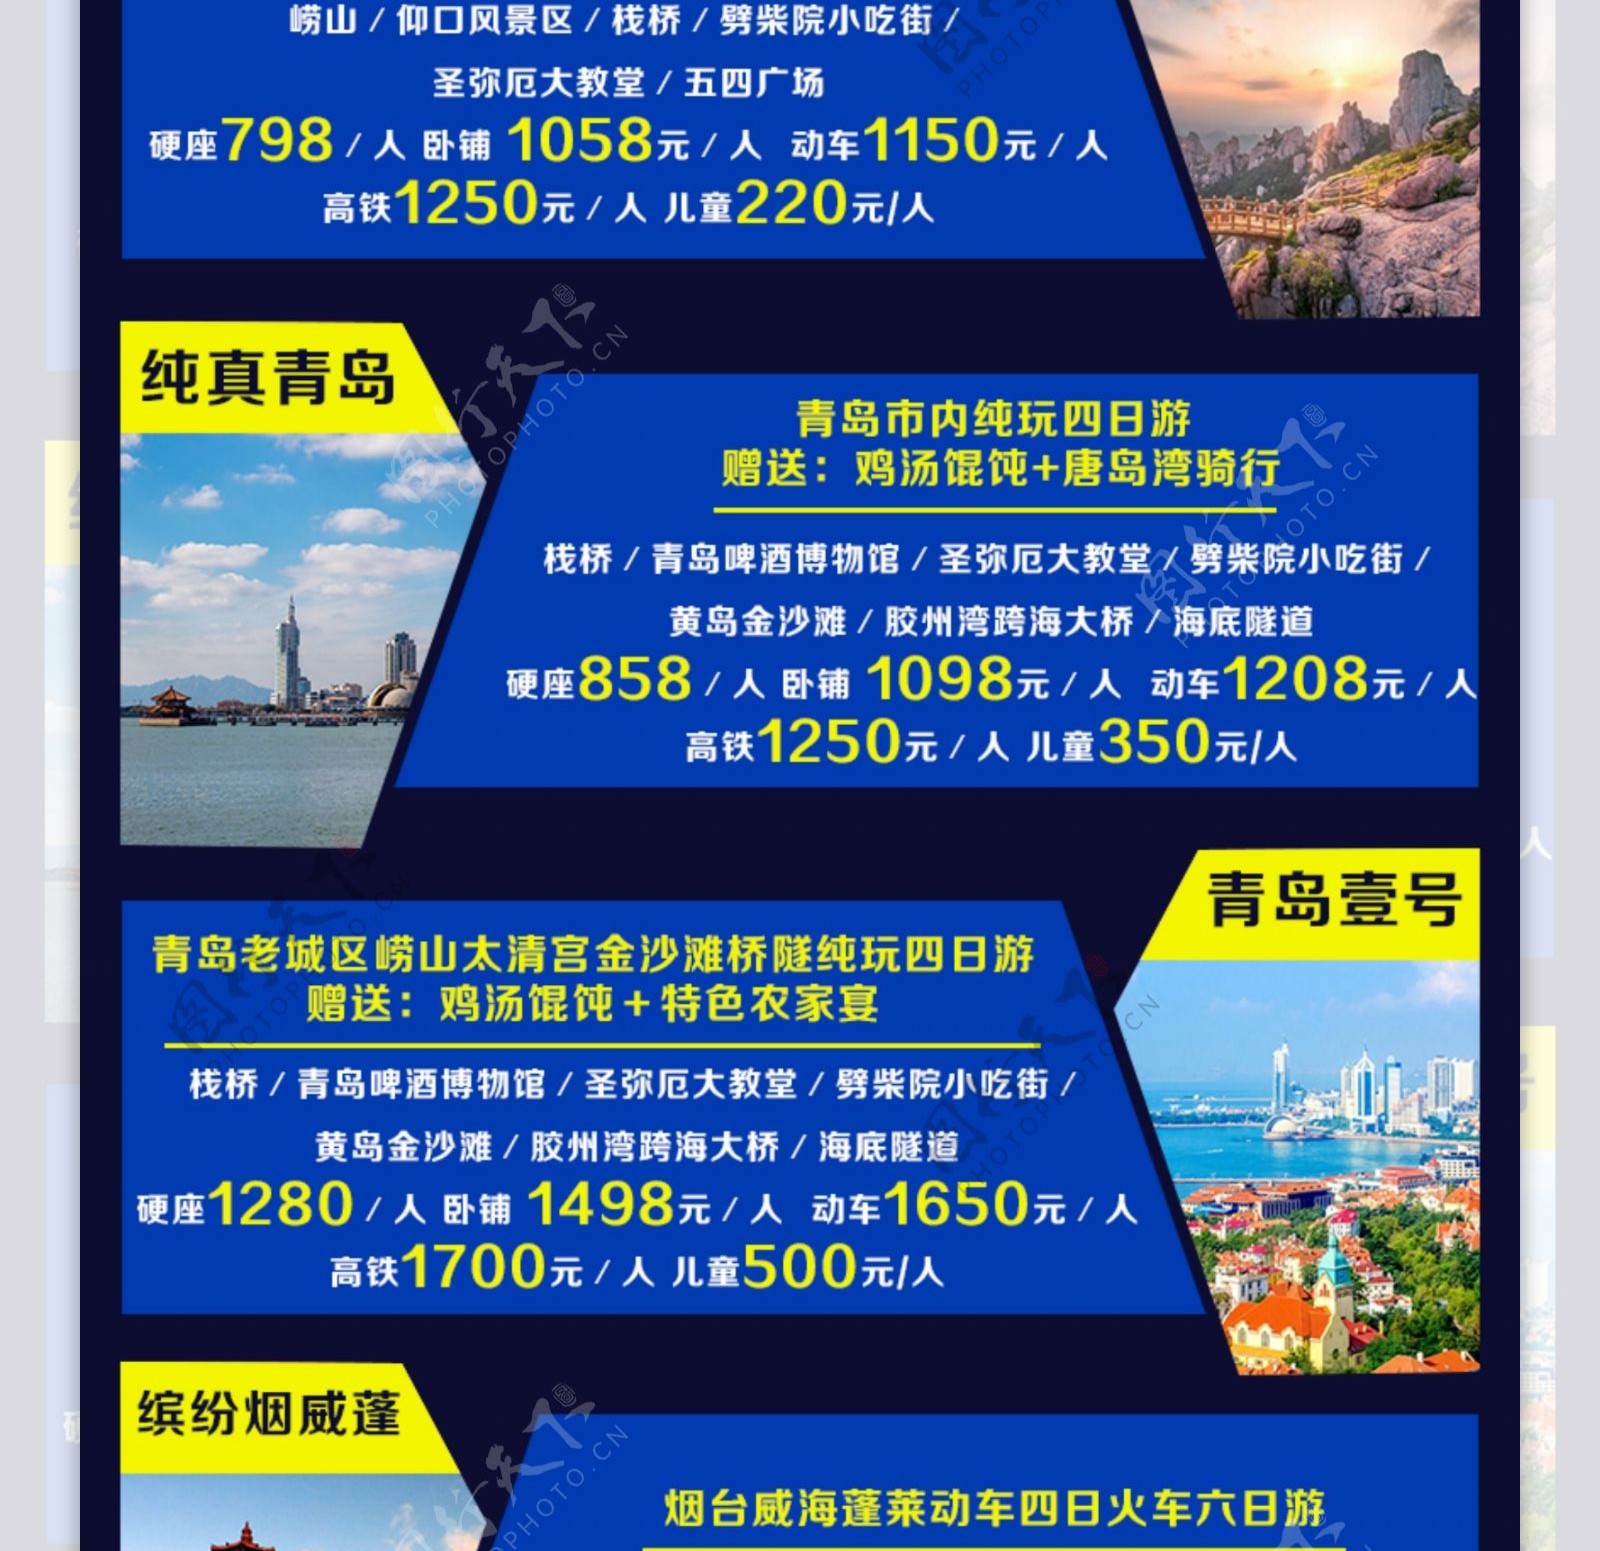 山东火车线路集锦长图旅游海报